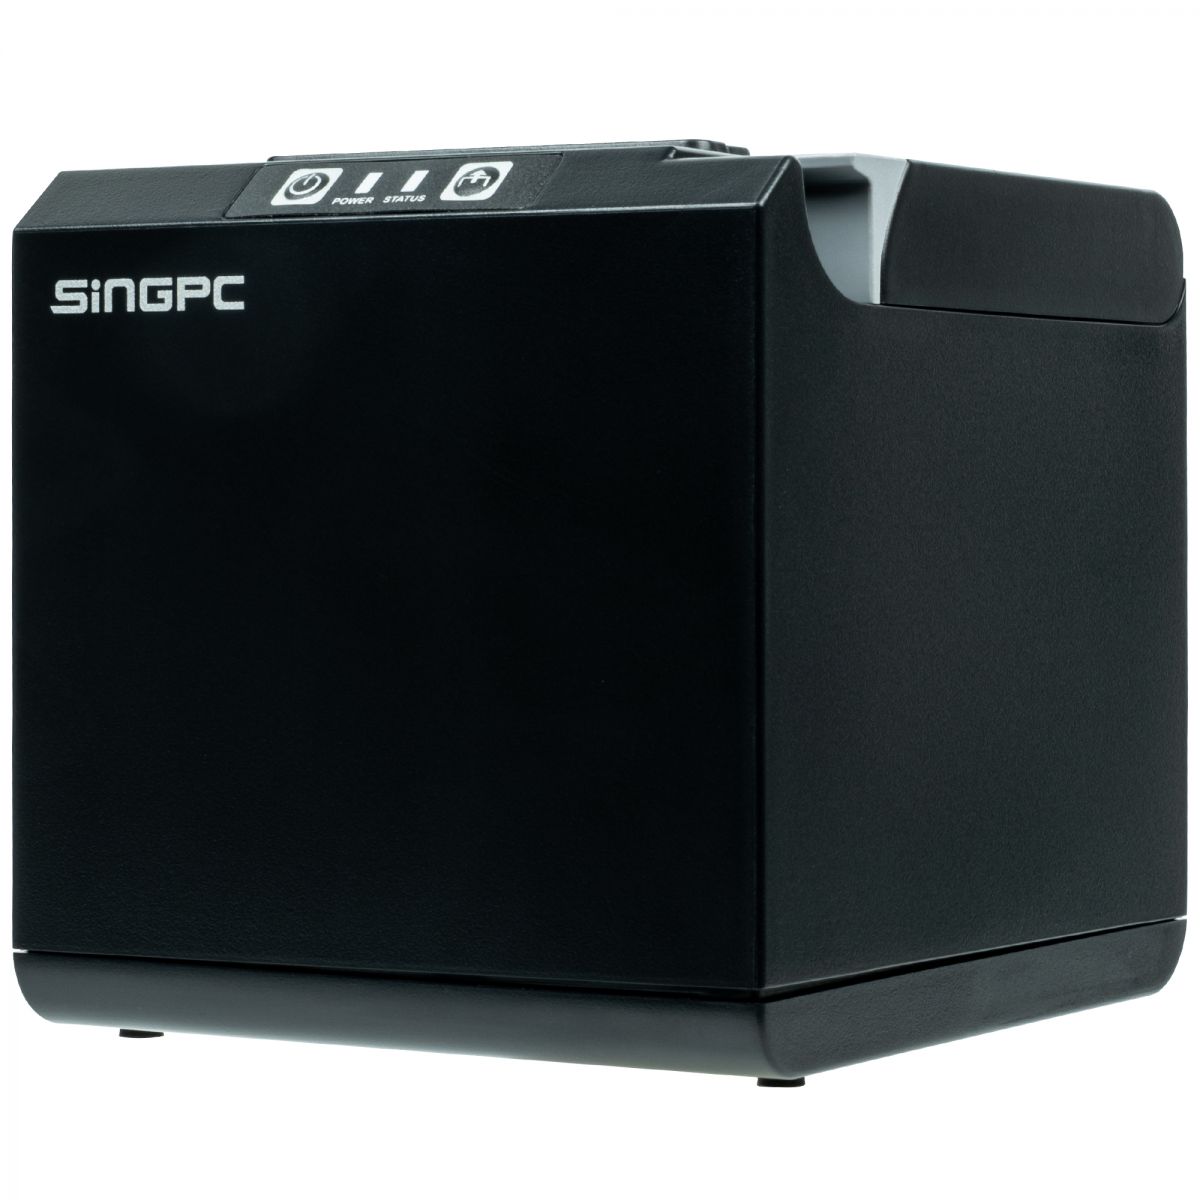 Máy in hóa đơn SingPC Print - 211